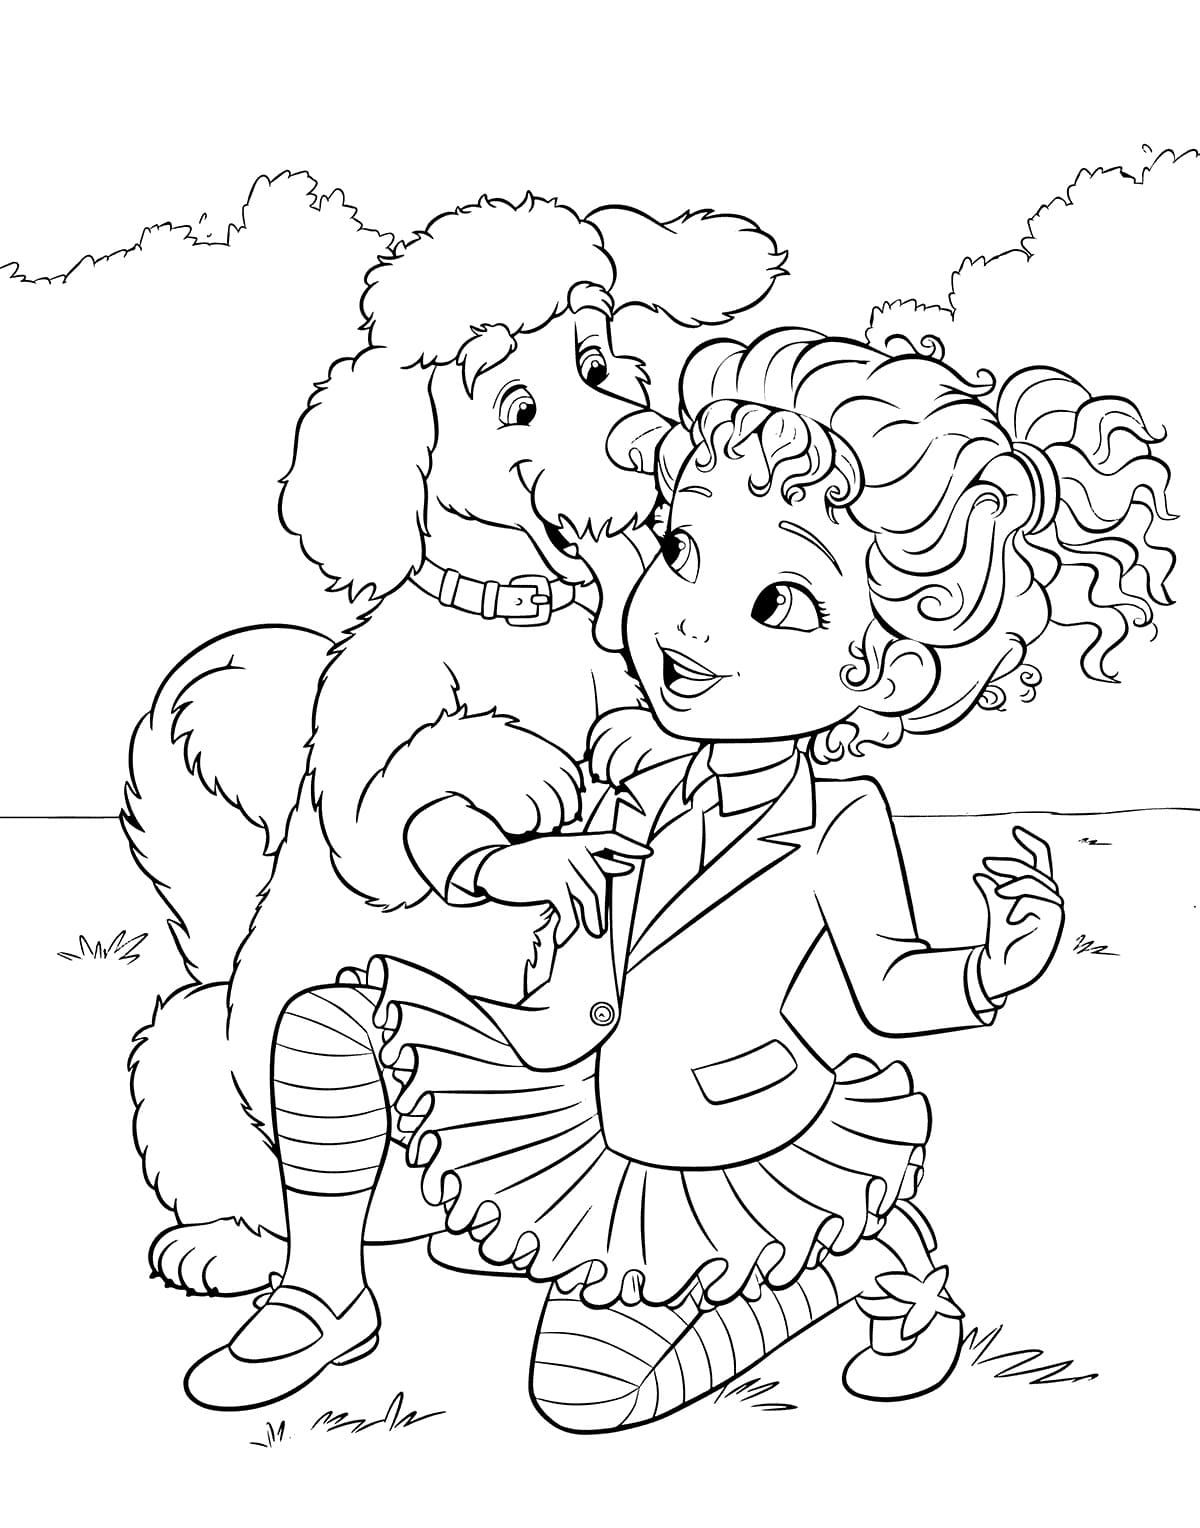 Fancy Nancy et Chien coloring page